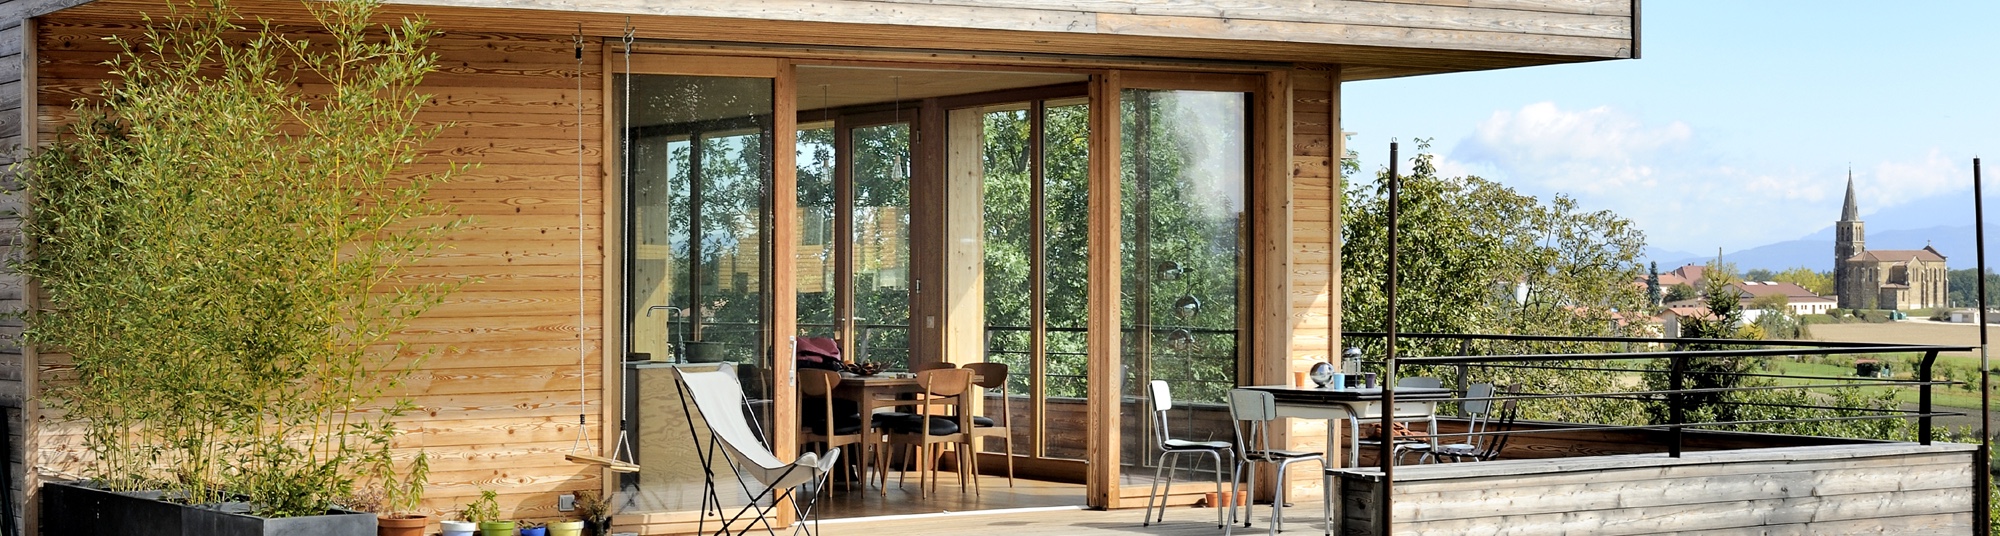 Maison ossature bois avec terrasse, menuiseries bois, baies vitrées bois